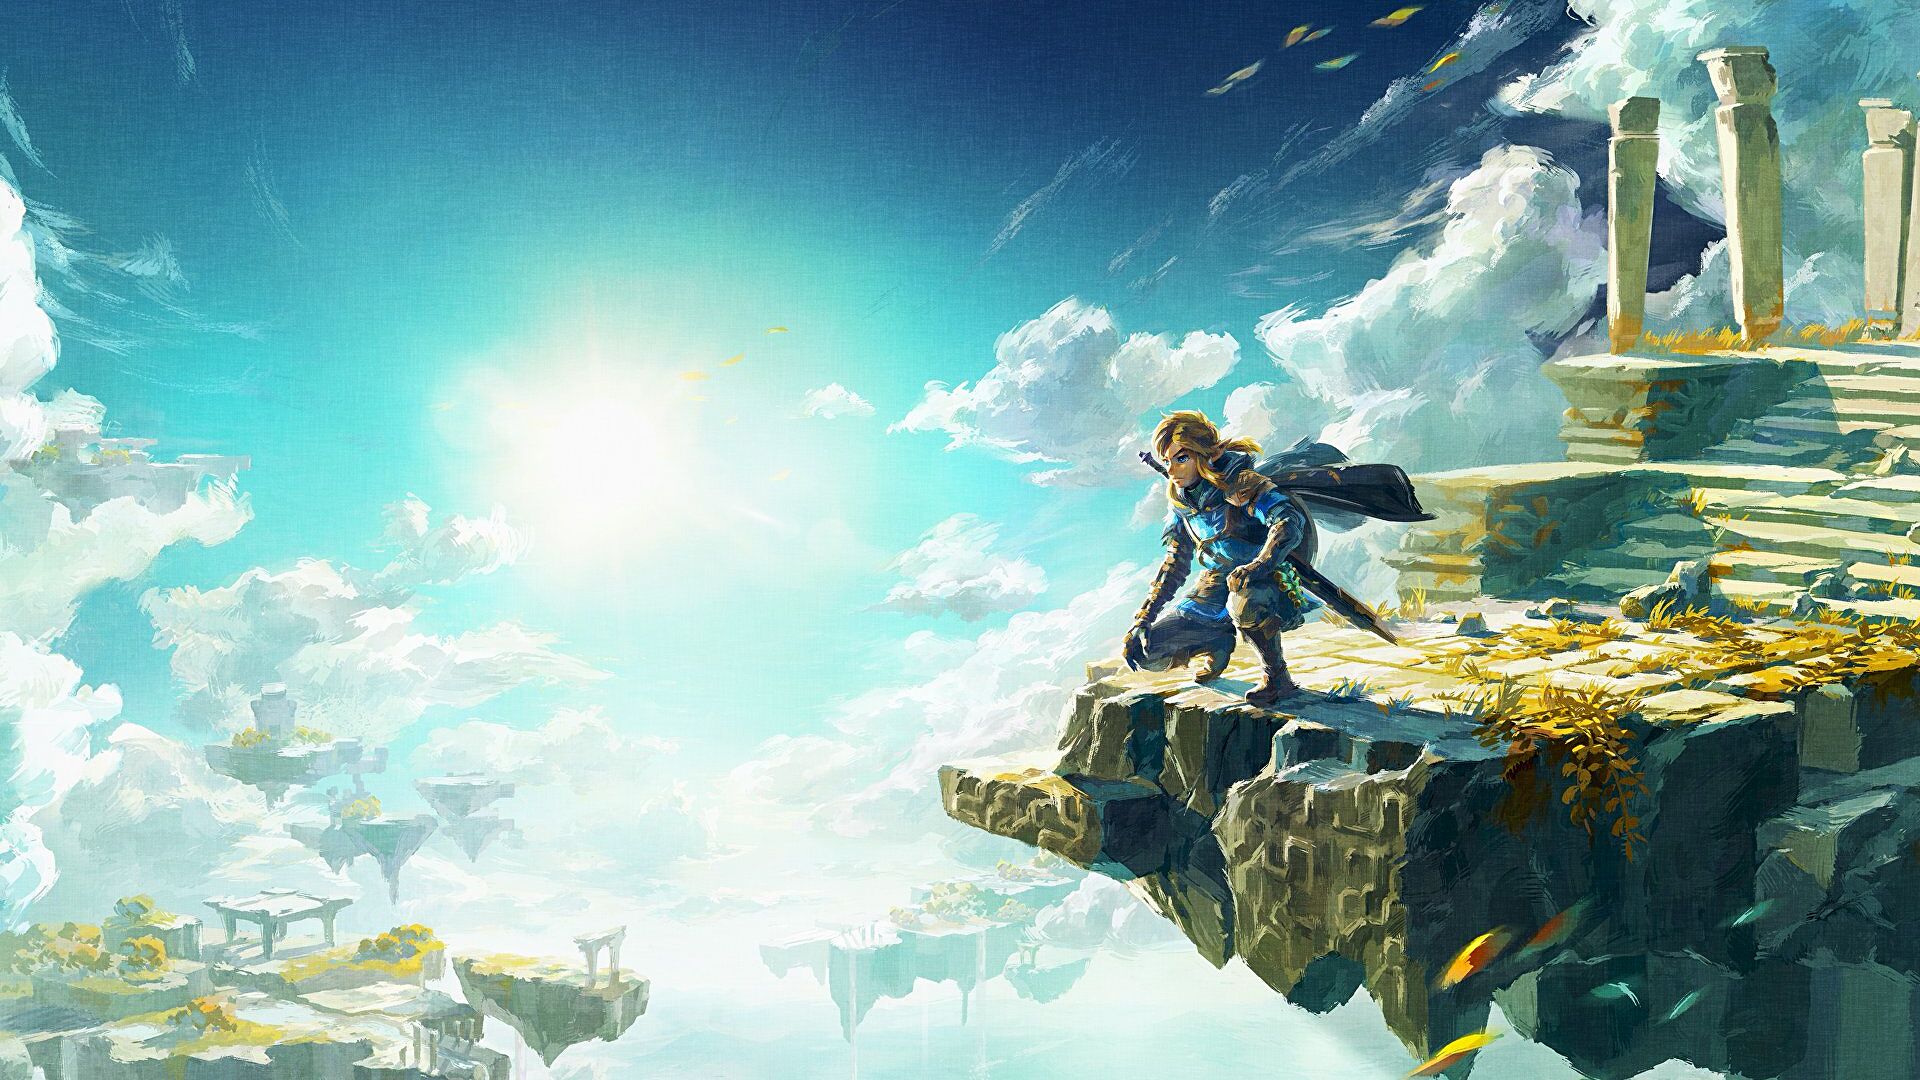 Immagine di The Legend of Zelda Tears of the Kingdom ha una bellissima statua di Link per pubblicizzare il gioco